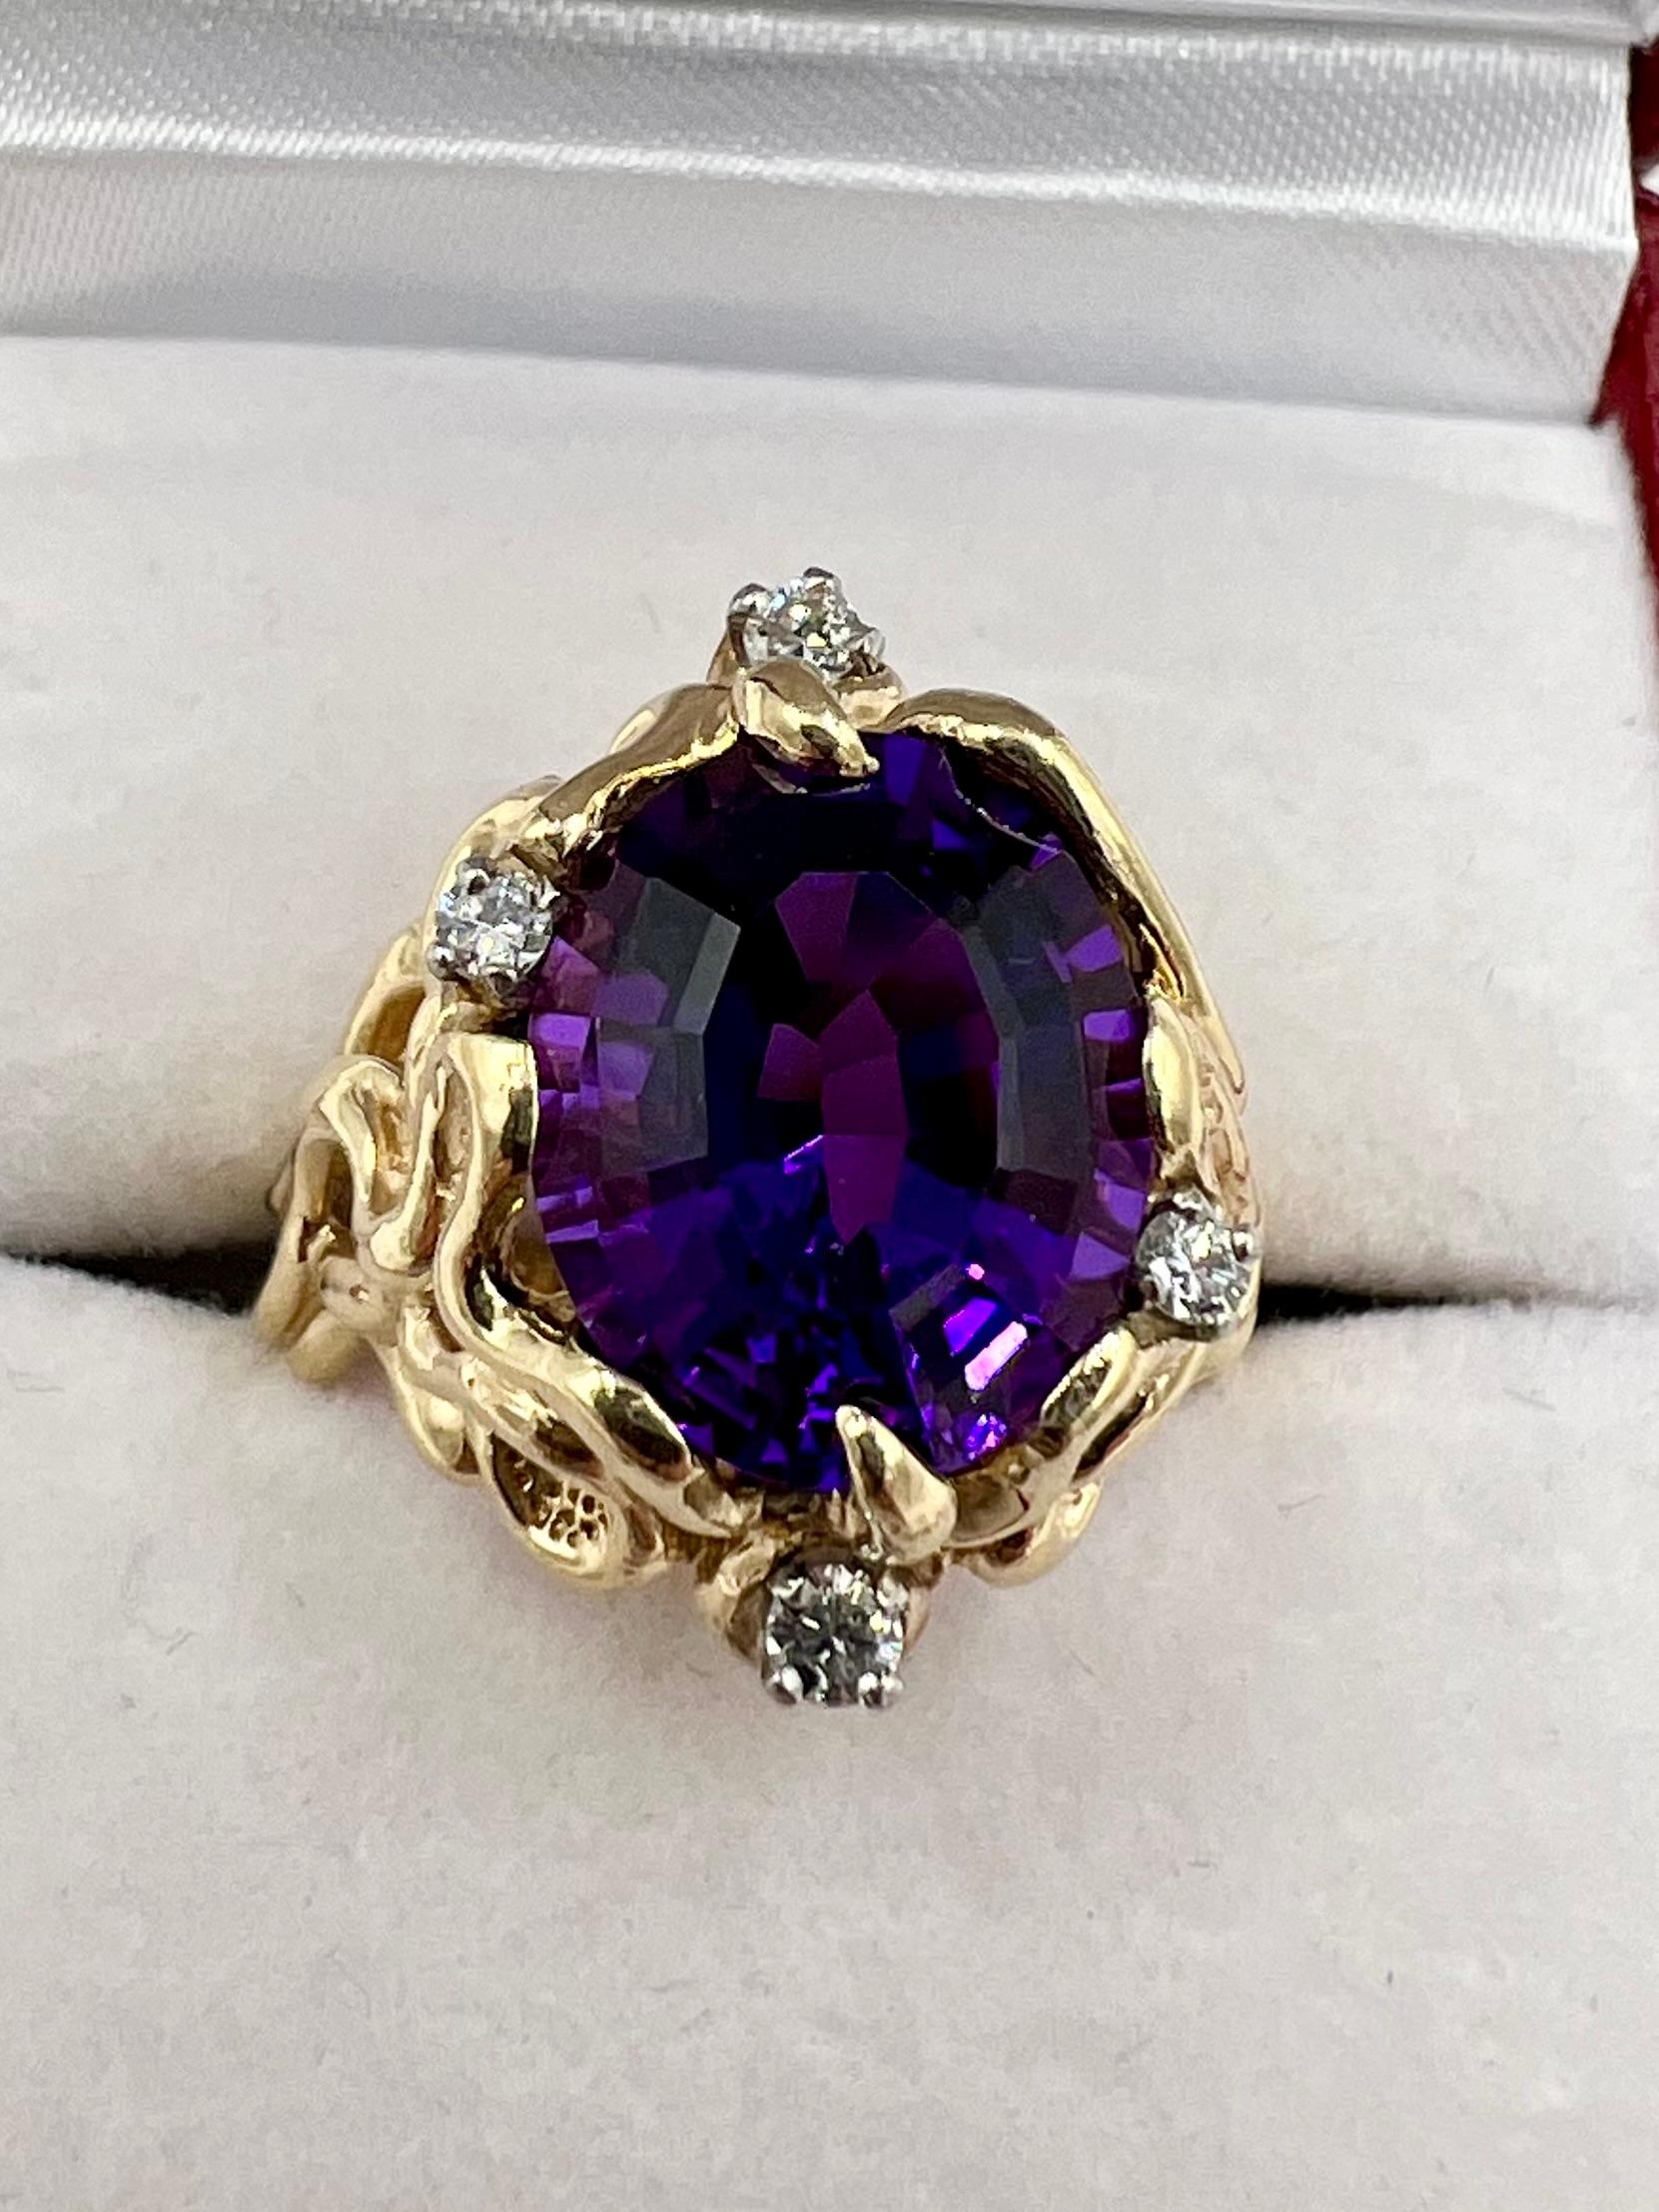 Vintage Amethyst diamond abstract yellow gold ring, circa 1970s.

   Cette beauté vintage présente une améthyste ovale d'un violet profond très riche et vibrant, accentuée par quatre diamants ronds de taille brillante.  Ne négligez pas non plus la